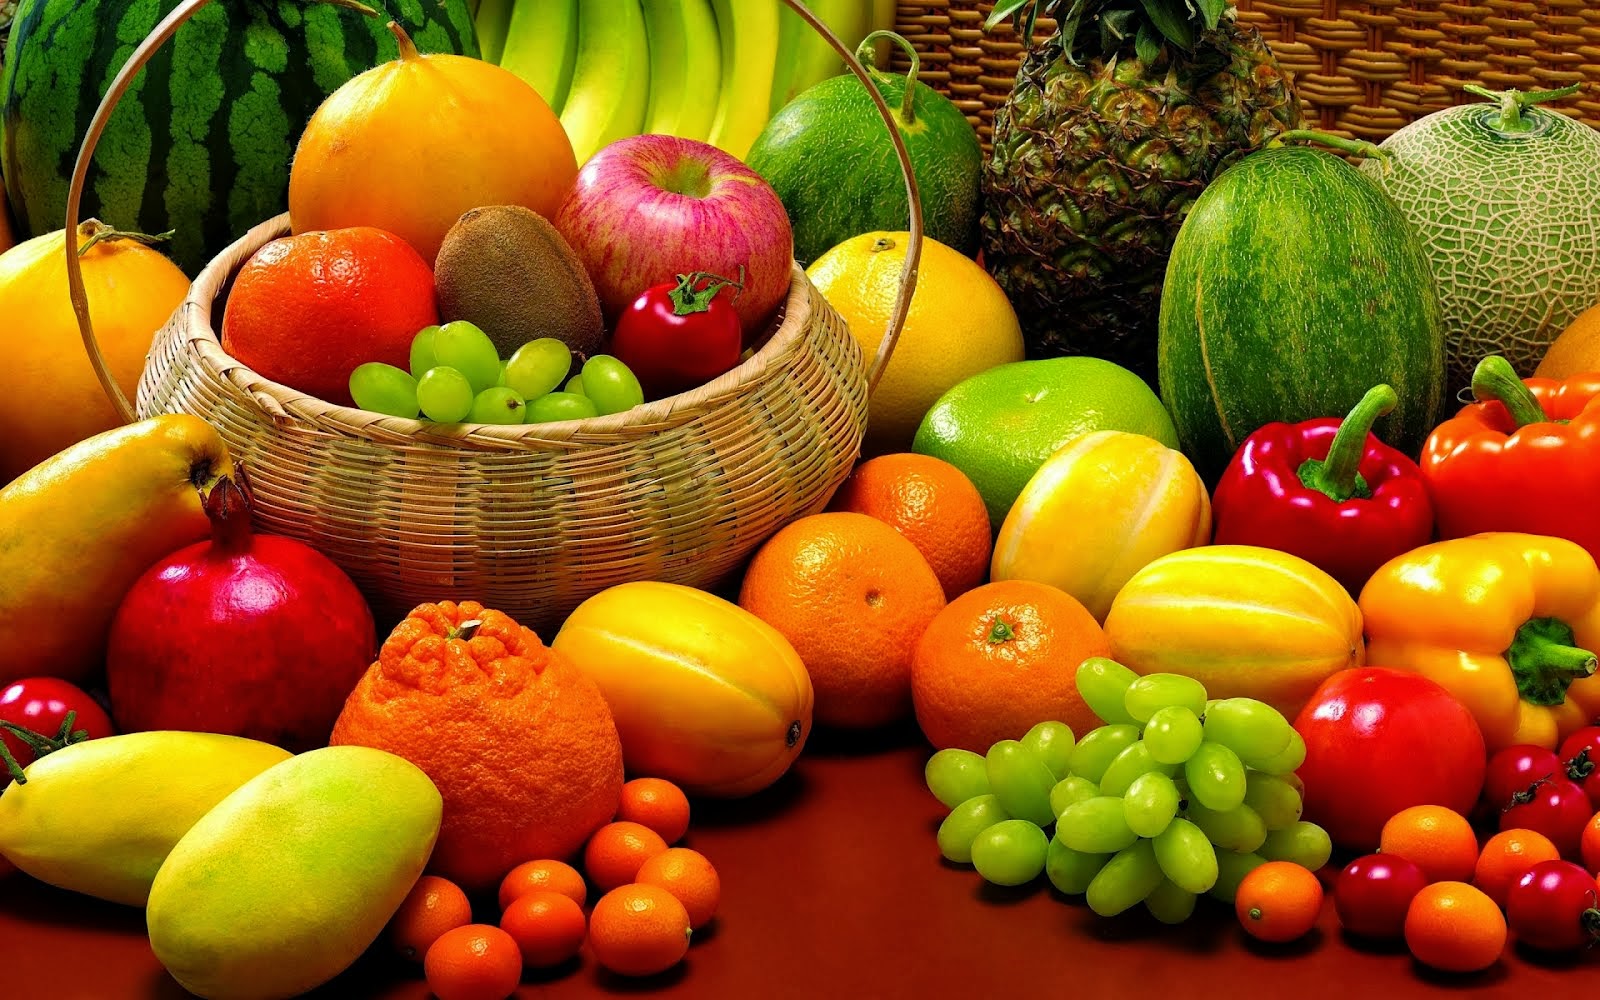 SUPERMERCADO O VAREJAO: Ofertas de frutas e verduras.